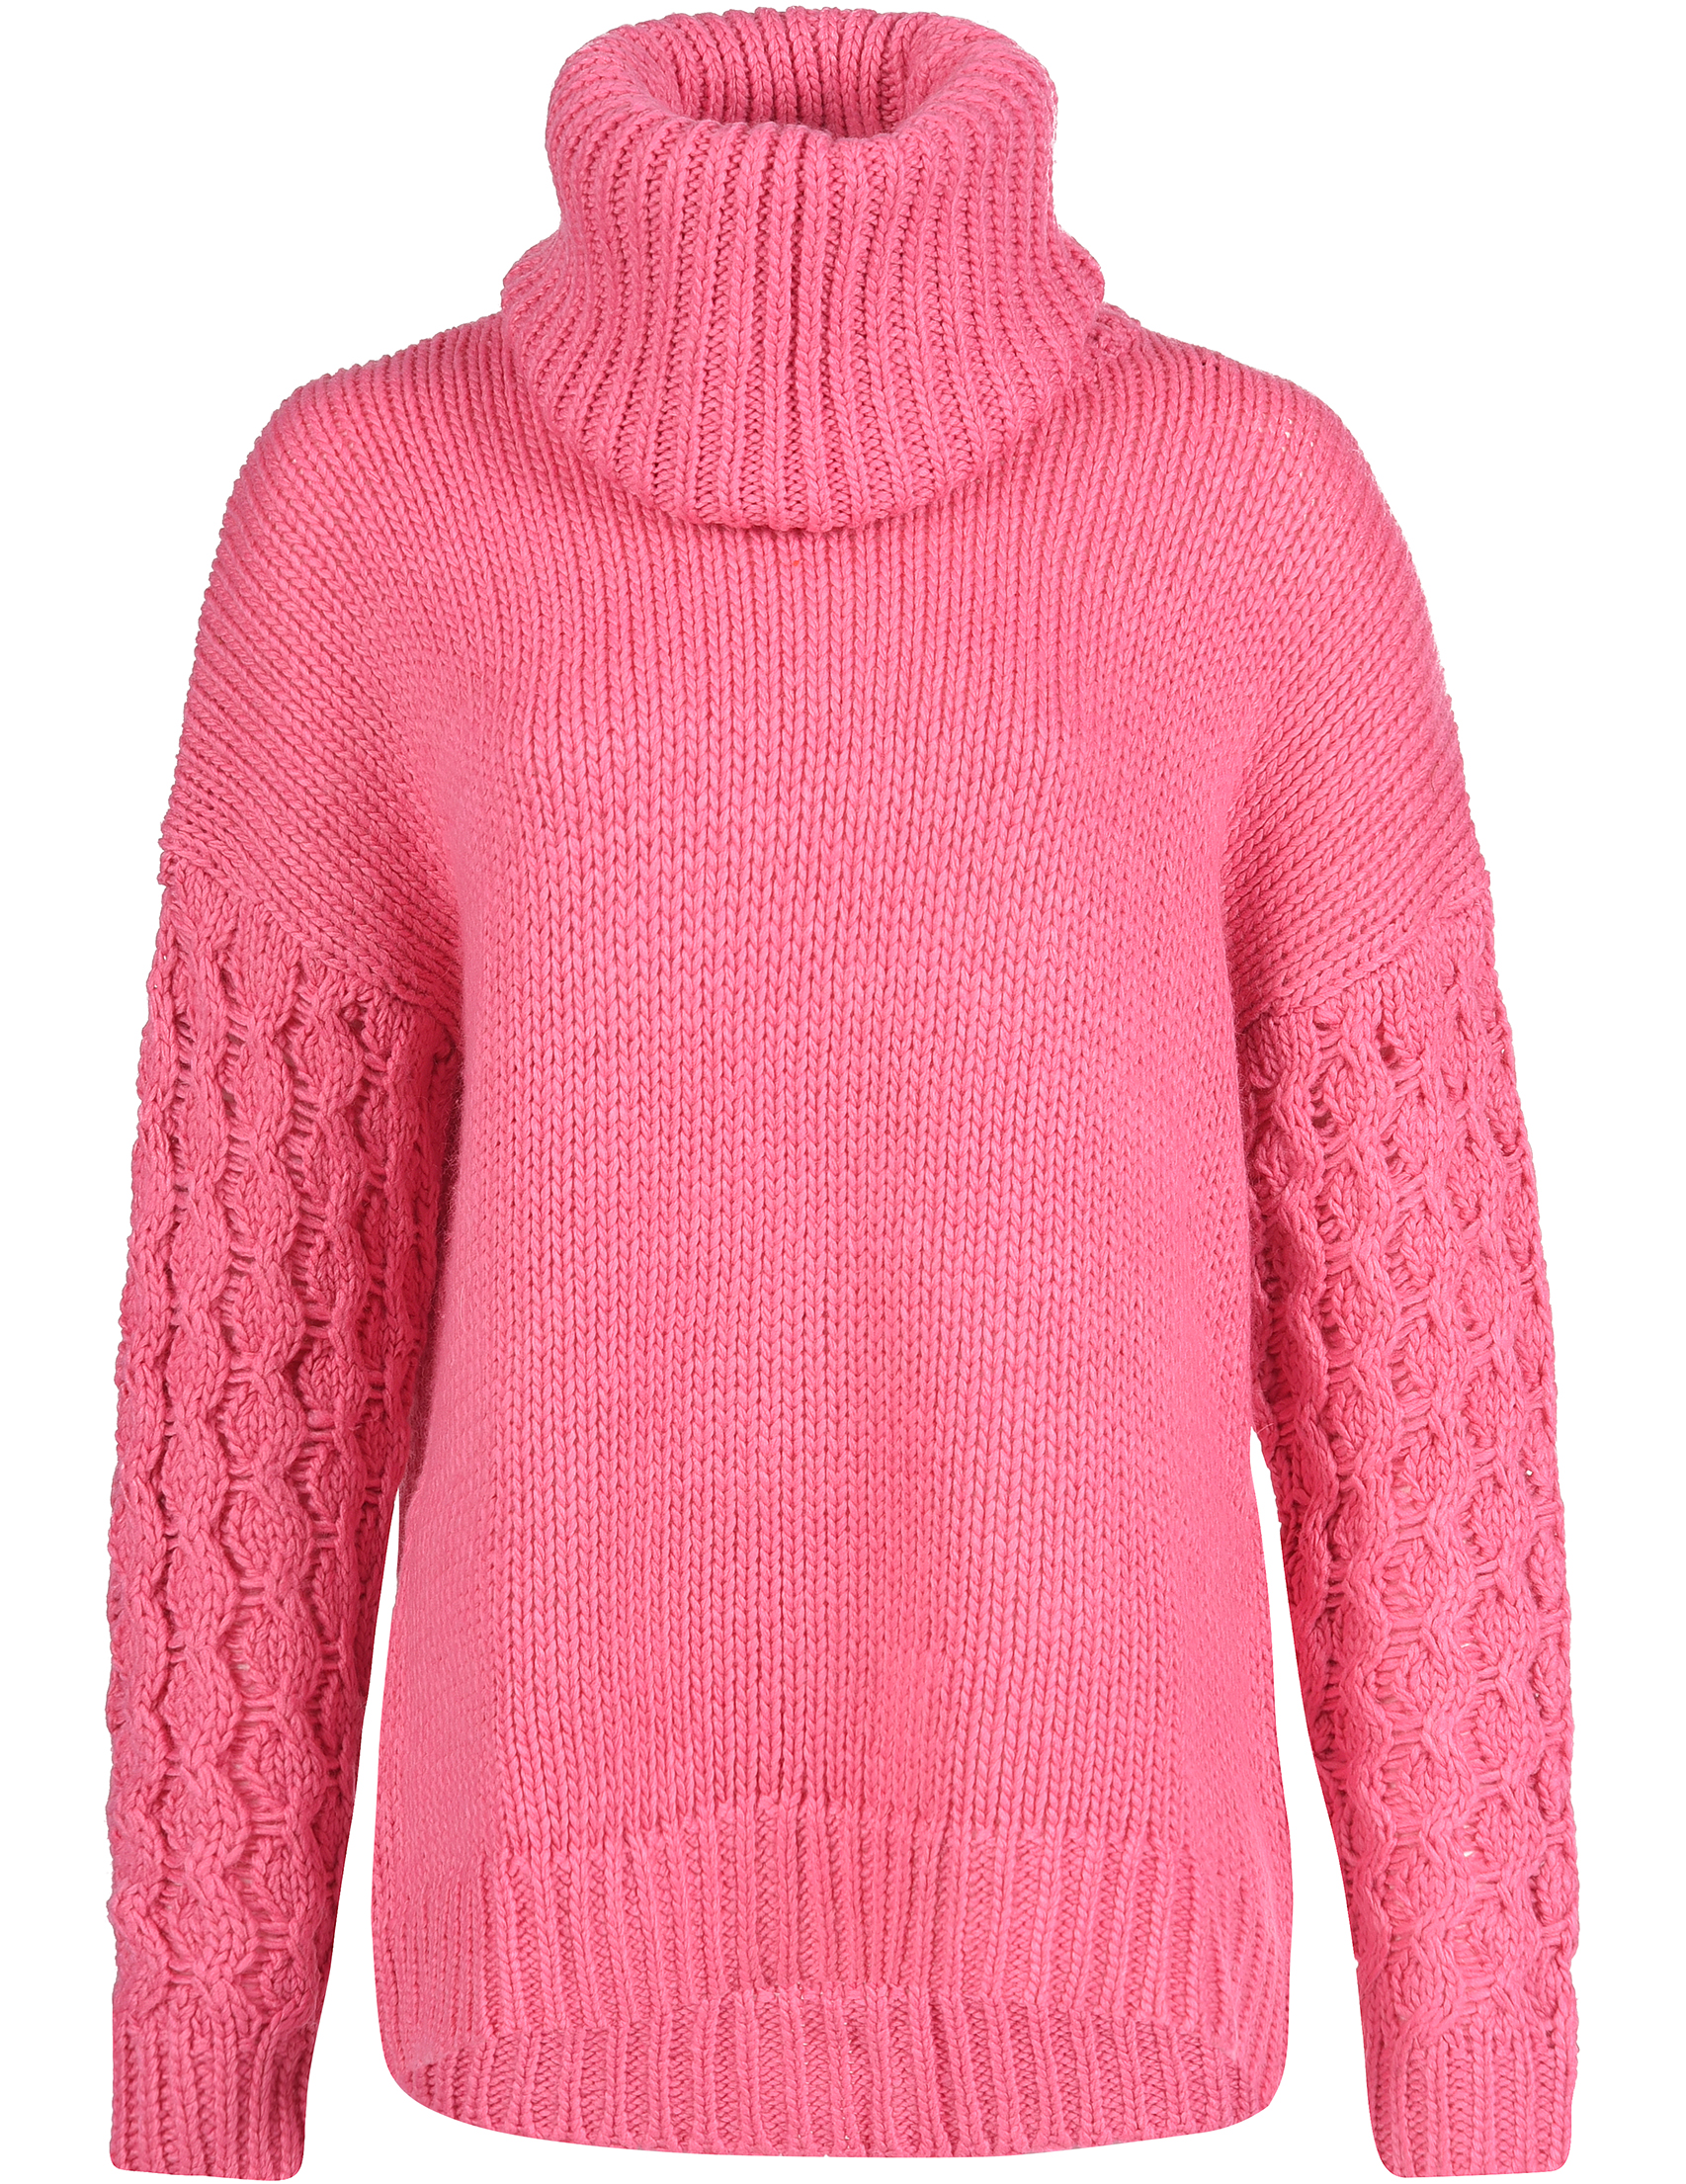 Джемпер недорого. Розовый свитер. Свитер женский. Розовый свитер с горлом женский. Розовый джемпер женский.